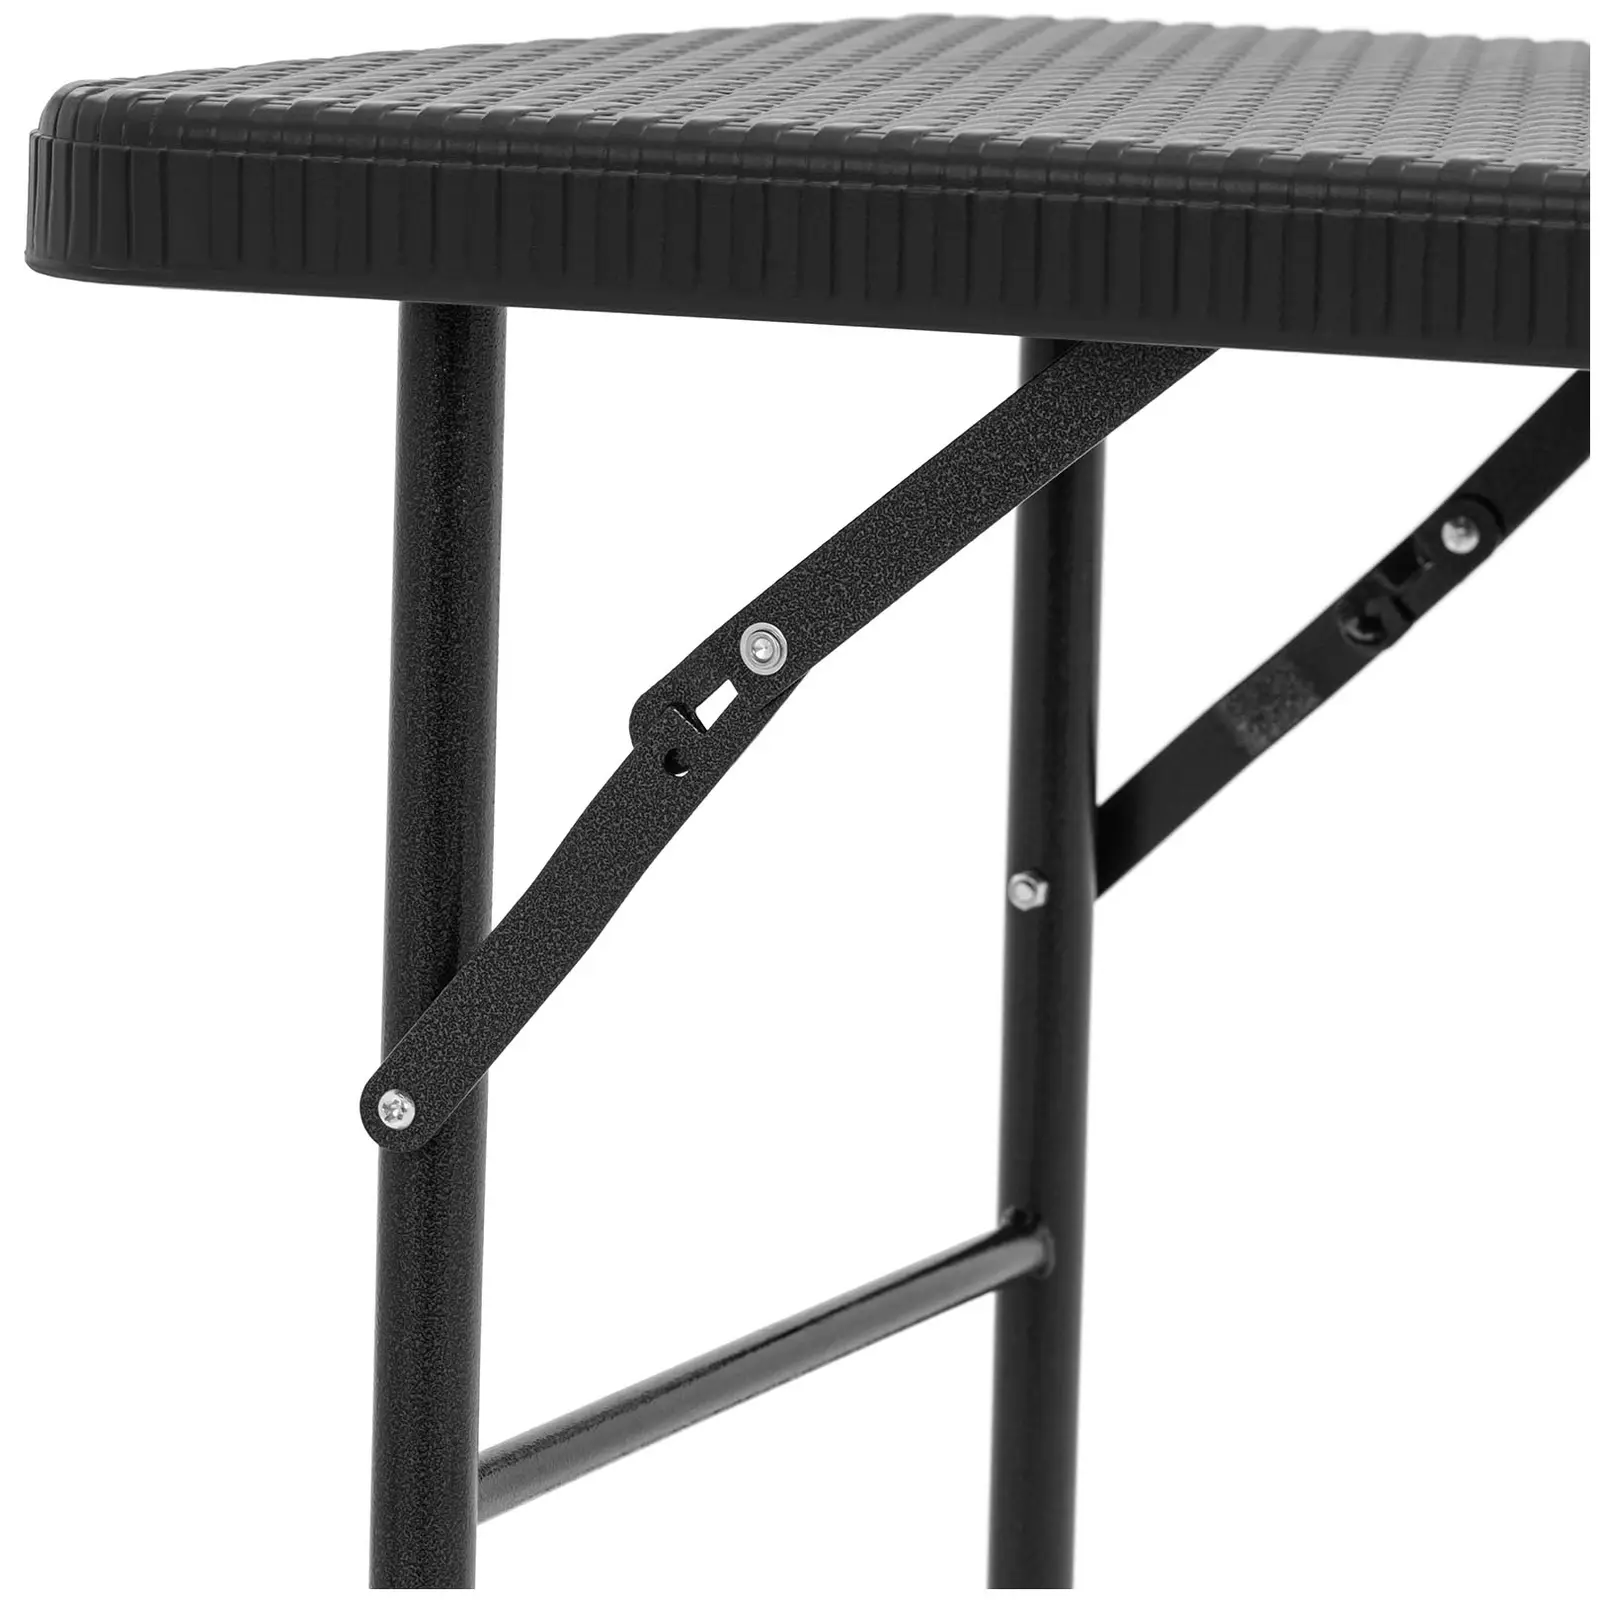 Összecsukható asztal - 121,60 x 61,50 x 73,50 cm - bel-/kültéri - fekete